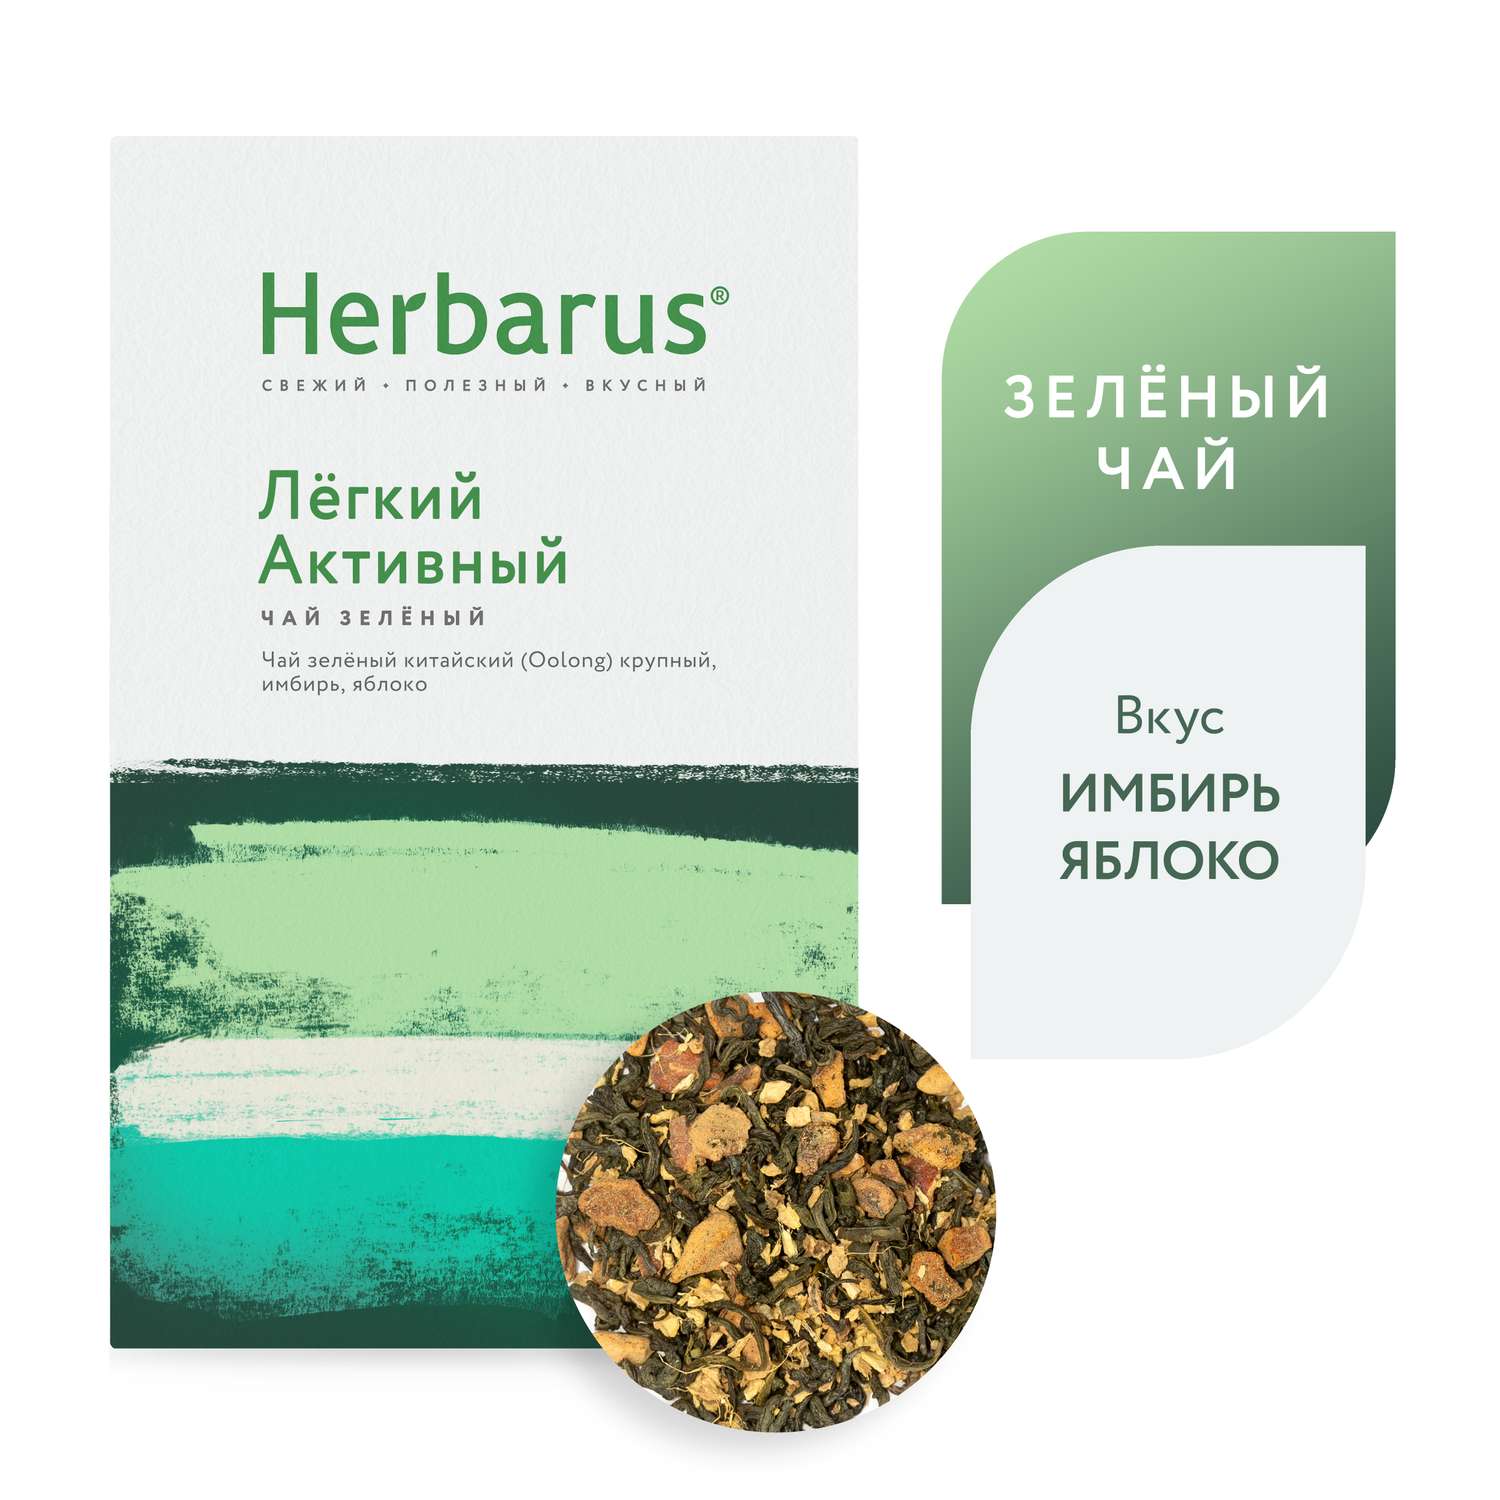 Зеленый чай с добавками Herbarus Легкий Активный листовой 100 г. - фото 1